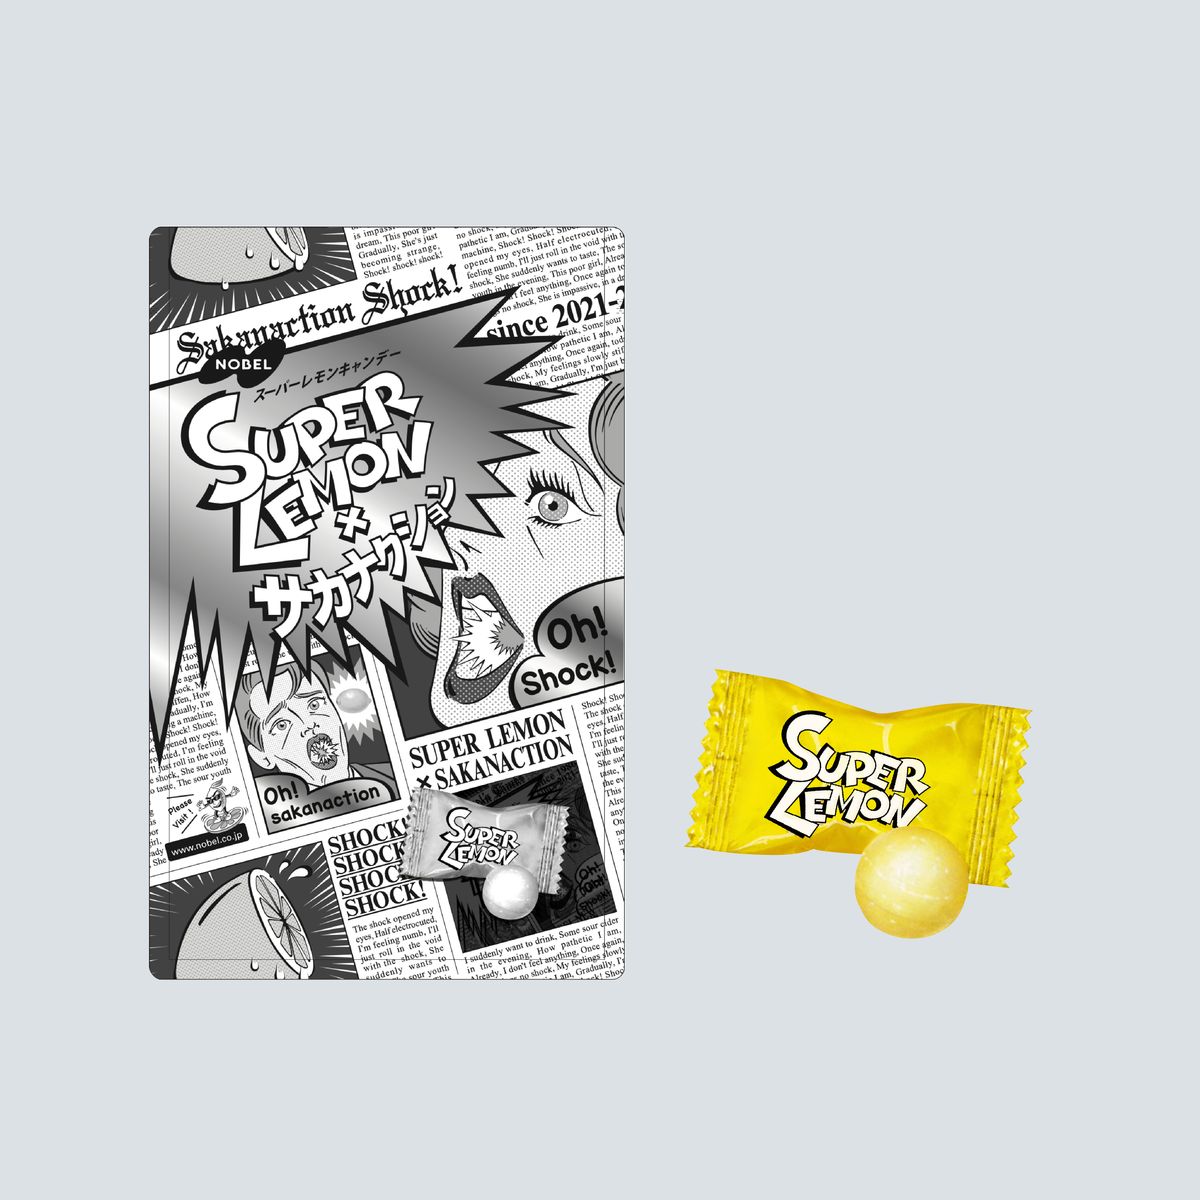 ノーベル製菓SUPERLEMON × sakanaction "SHOCK CANDY"